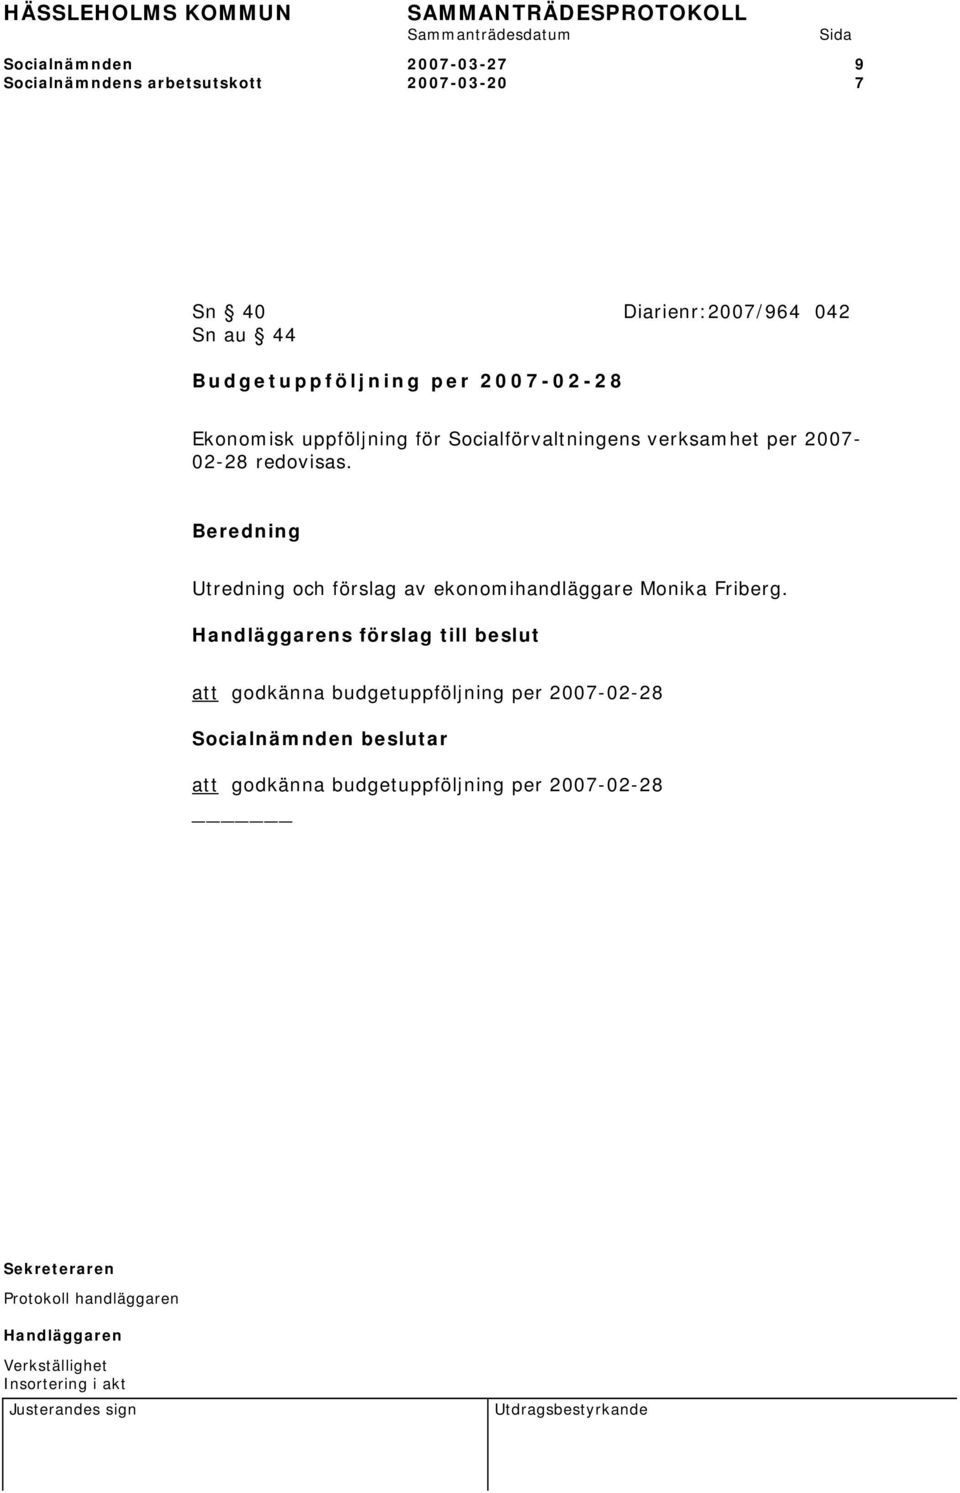 verksamhet per 2007-02-28 redovisas. Utredning och förslag av ekonomihandläggare Monika Friberg.